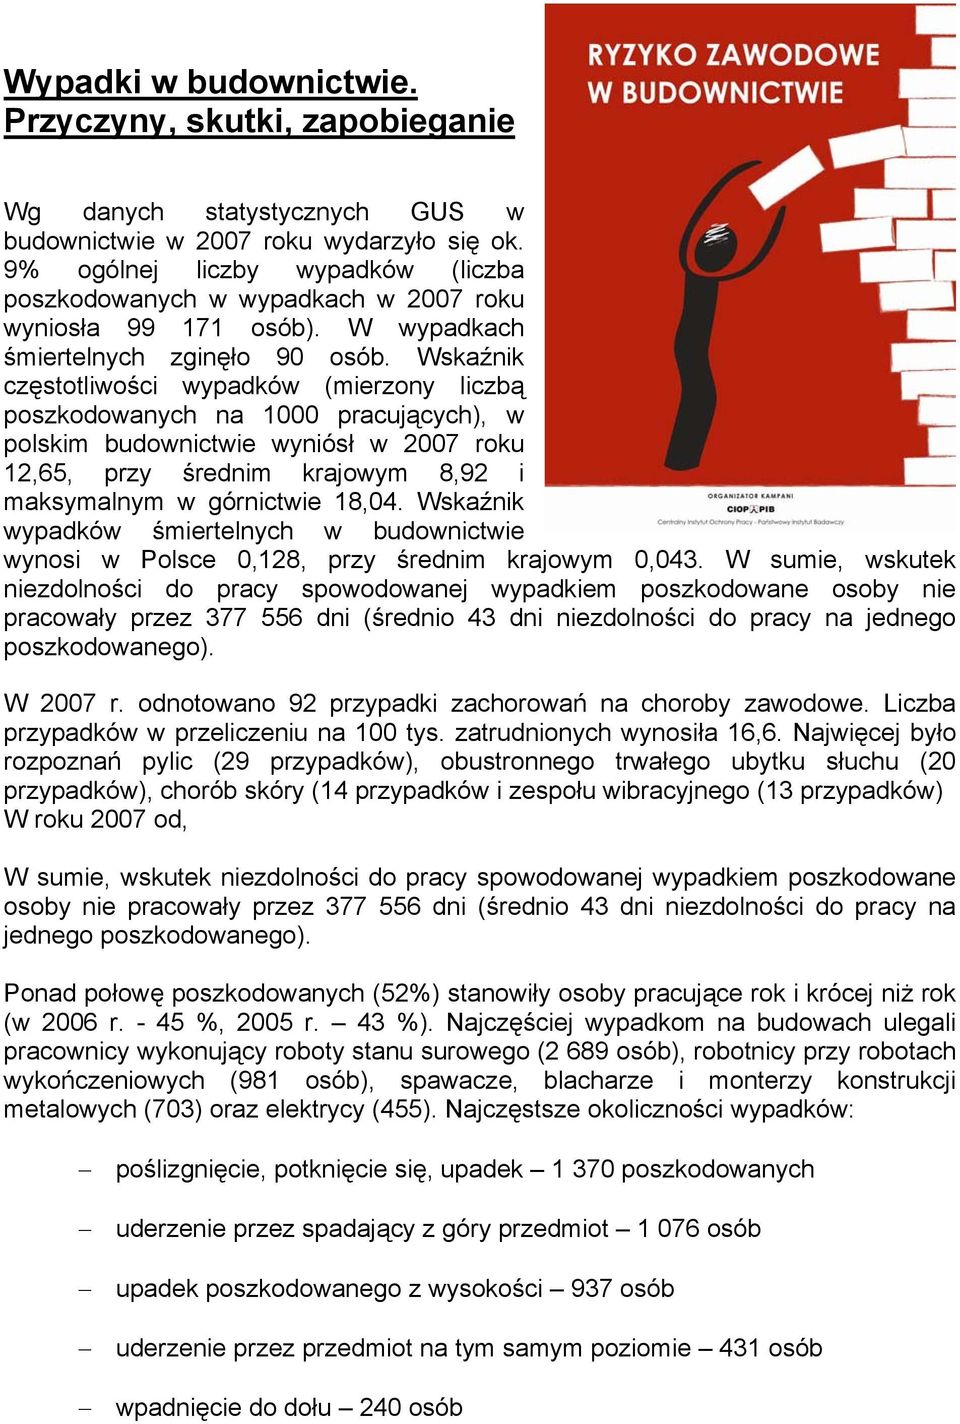 Wskaźnik częstotliwości wypadków (mierzony liczbą poszkodowanych na 1000 pracujących), w polskim budownictwie wyniósł w 2007 roku 12,65, przy średnim krajowym 8,92 i maksymalnym w górnictwie 18,04.